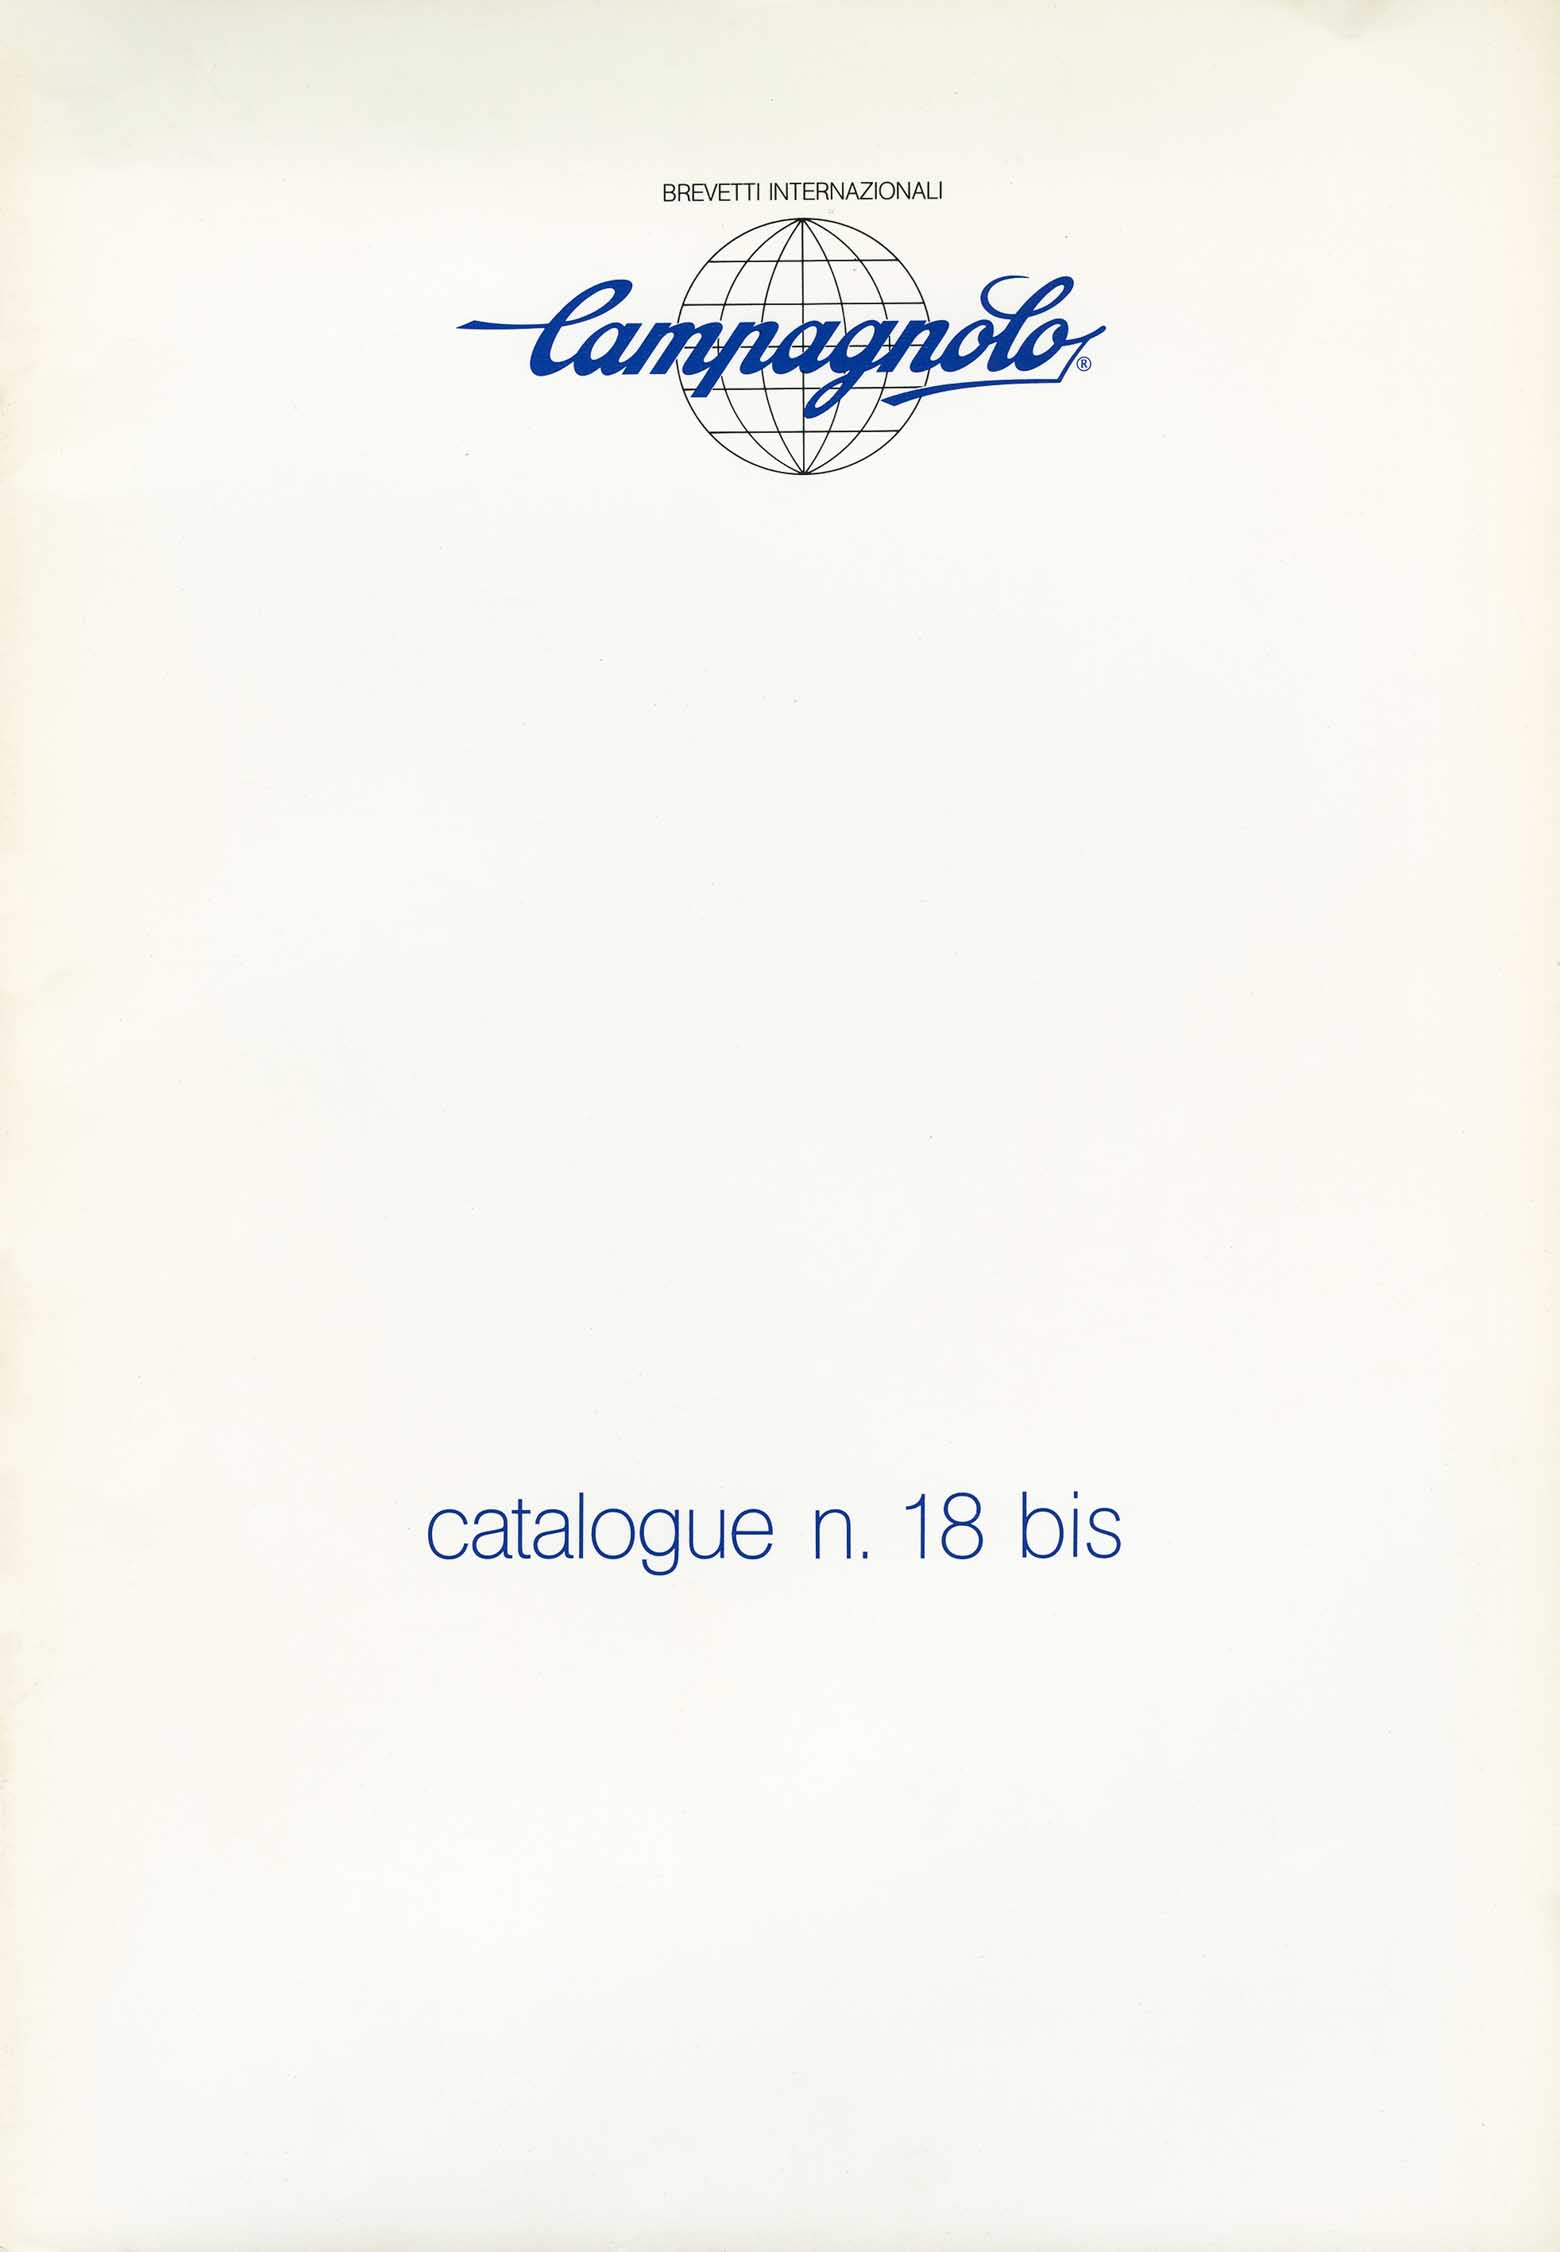 Campagnolo - catalogue n. 18 bis (Dec 85 version) page 01 main image